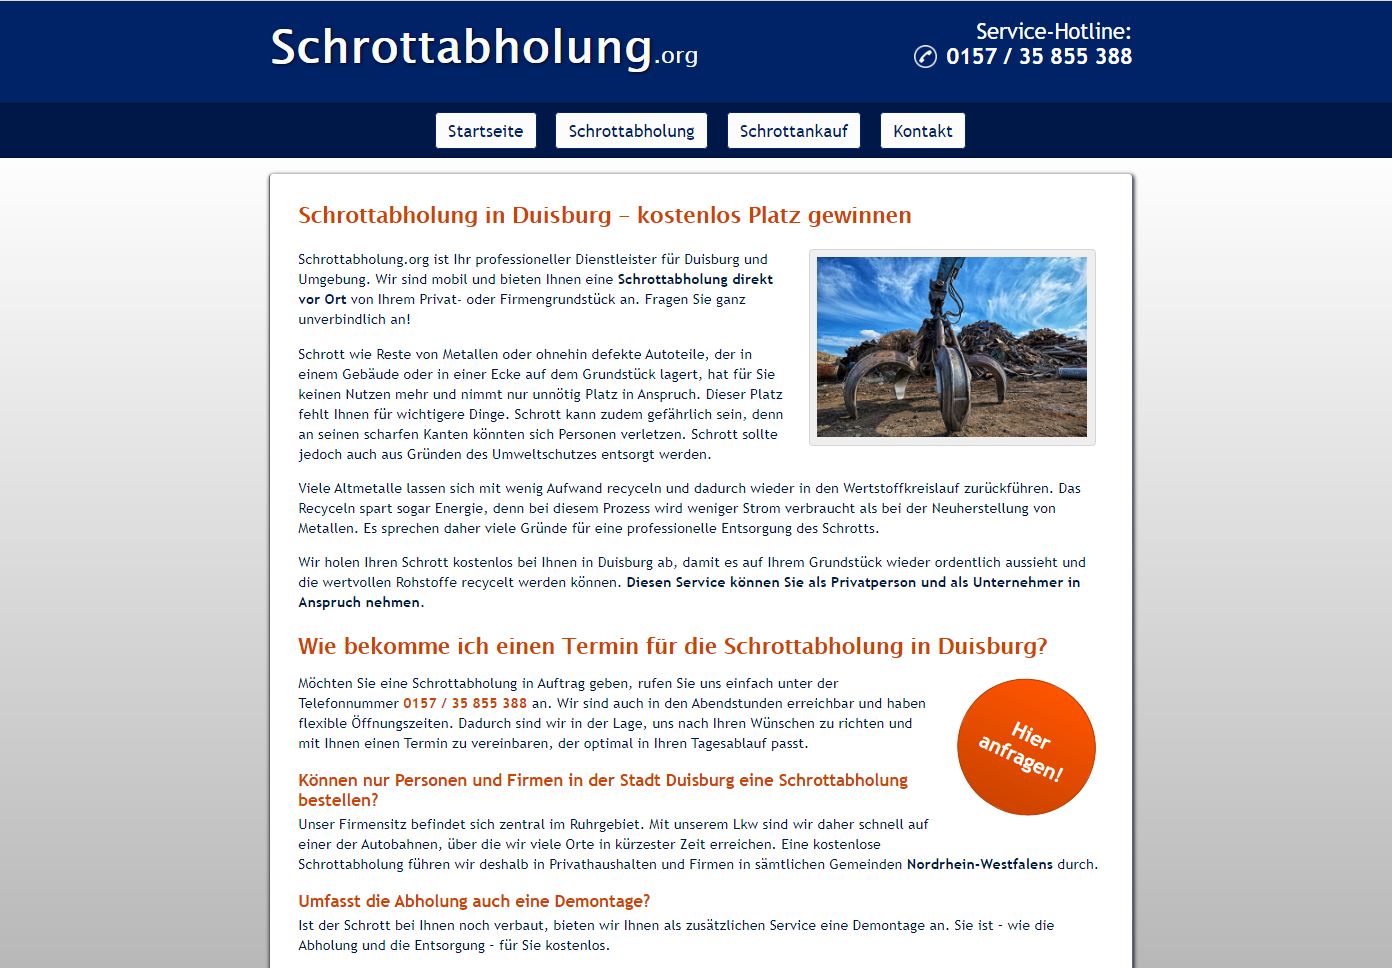 Schrottabholung Duisburg – mit Schrott Geld verdienen